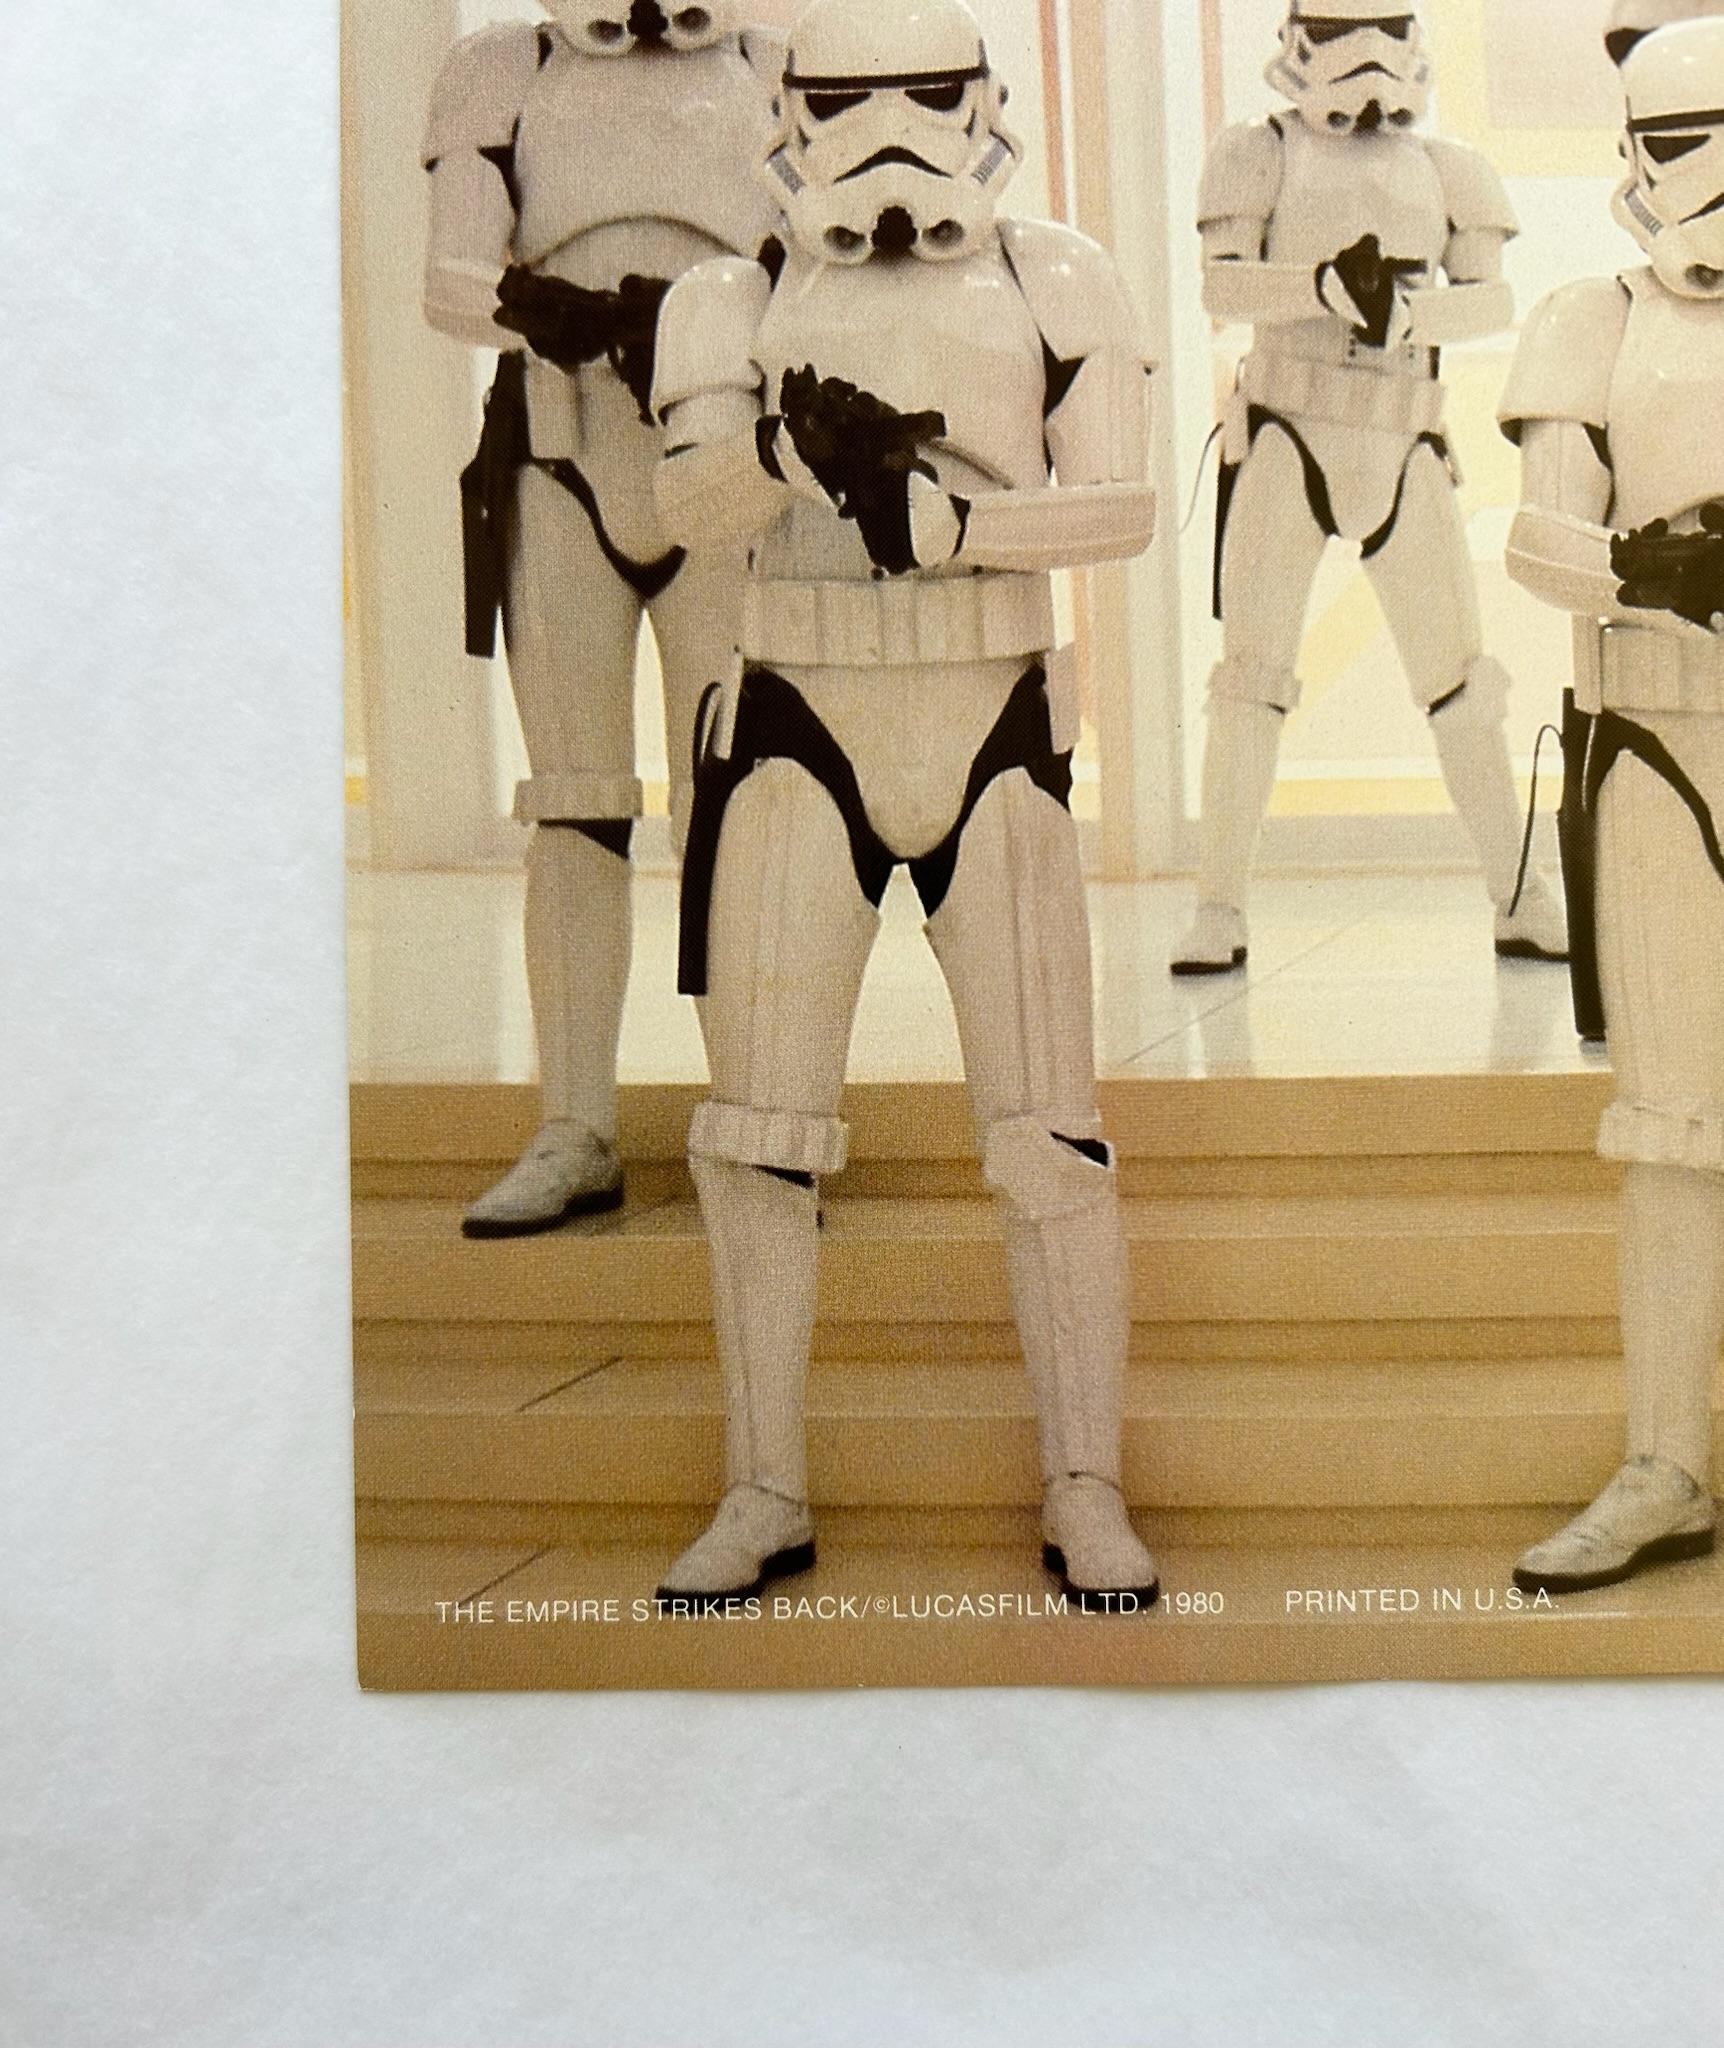 Star Wars: Das Imperium schlägt zurück 1980 Vintage Lobby Karte #14

Original Star Wars-Lobbykarte mit Sturmtruppen auf dem Todesstern

Optionen für die Einrahmung verfügbar: Schwarz, braun, weiß und Plexiglas 

Zustand: Ausgezeichnet 

Größe: 10 x